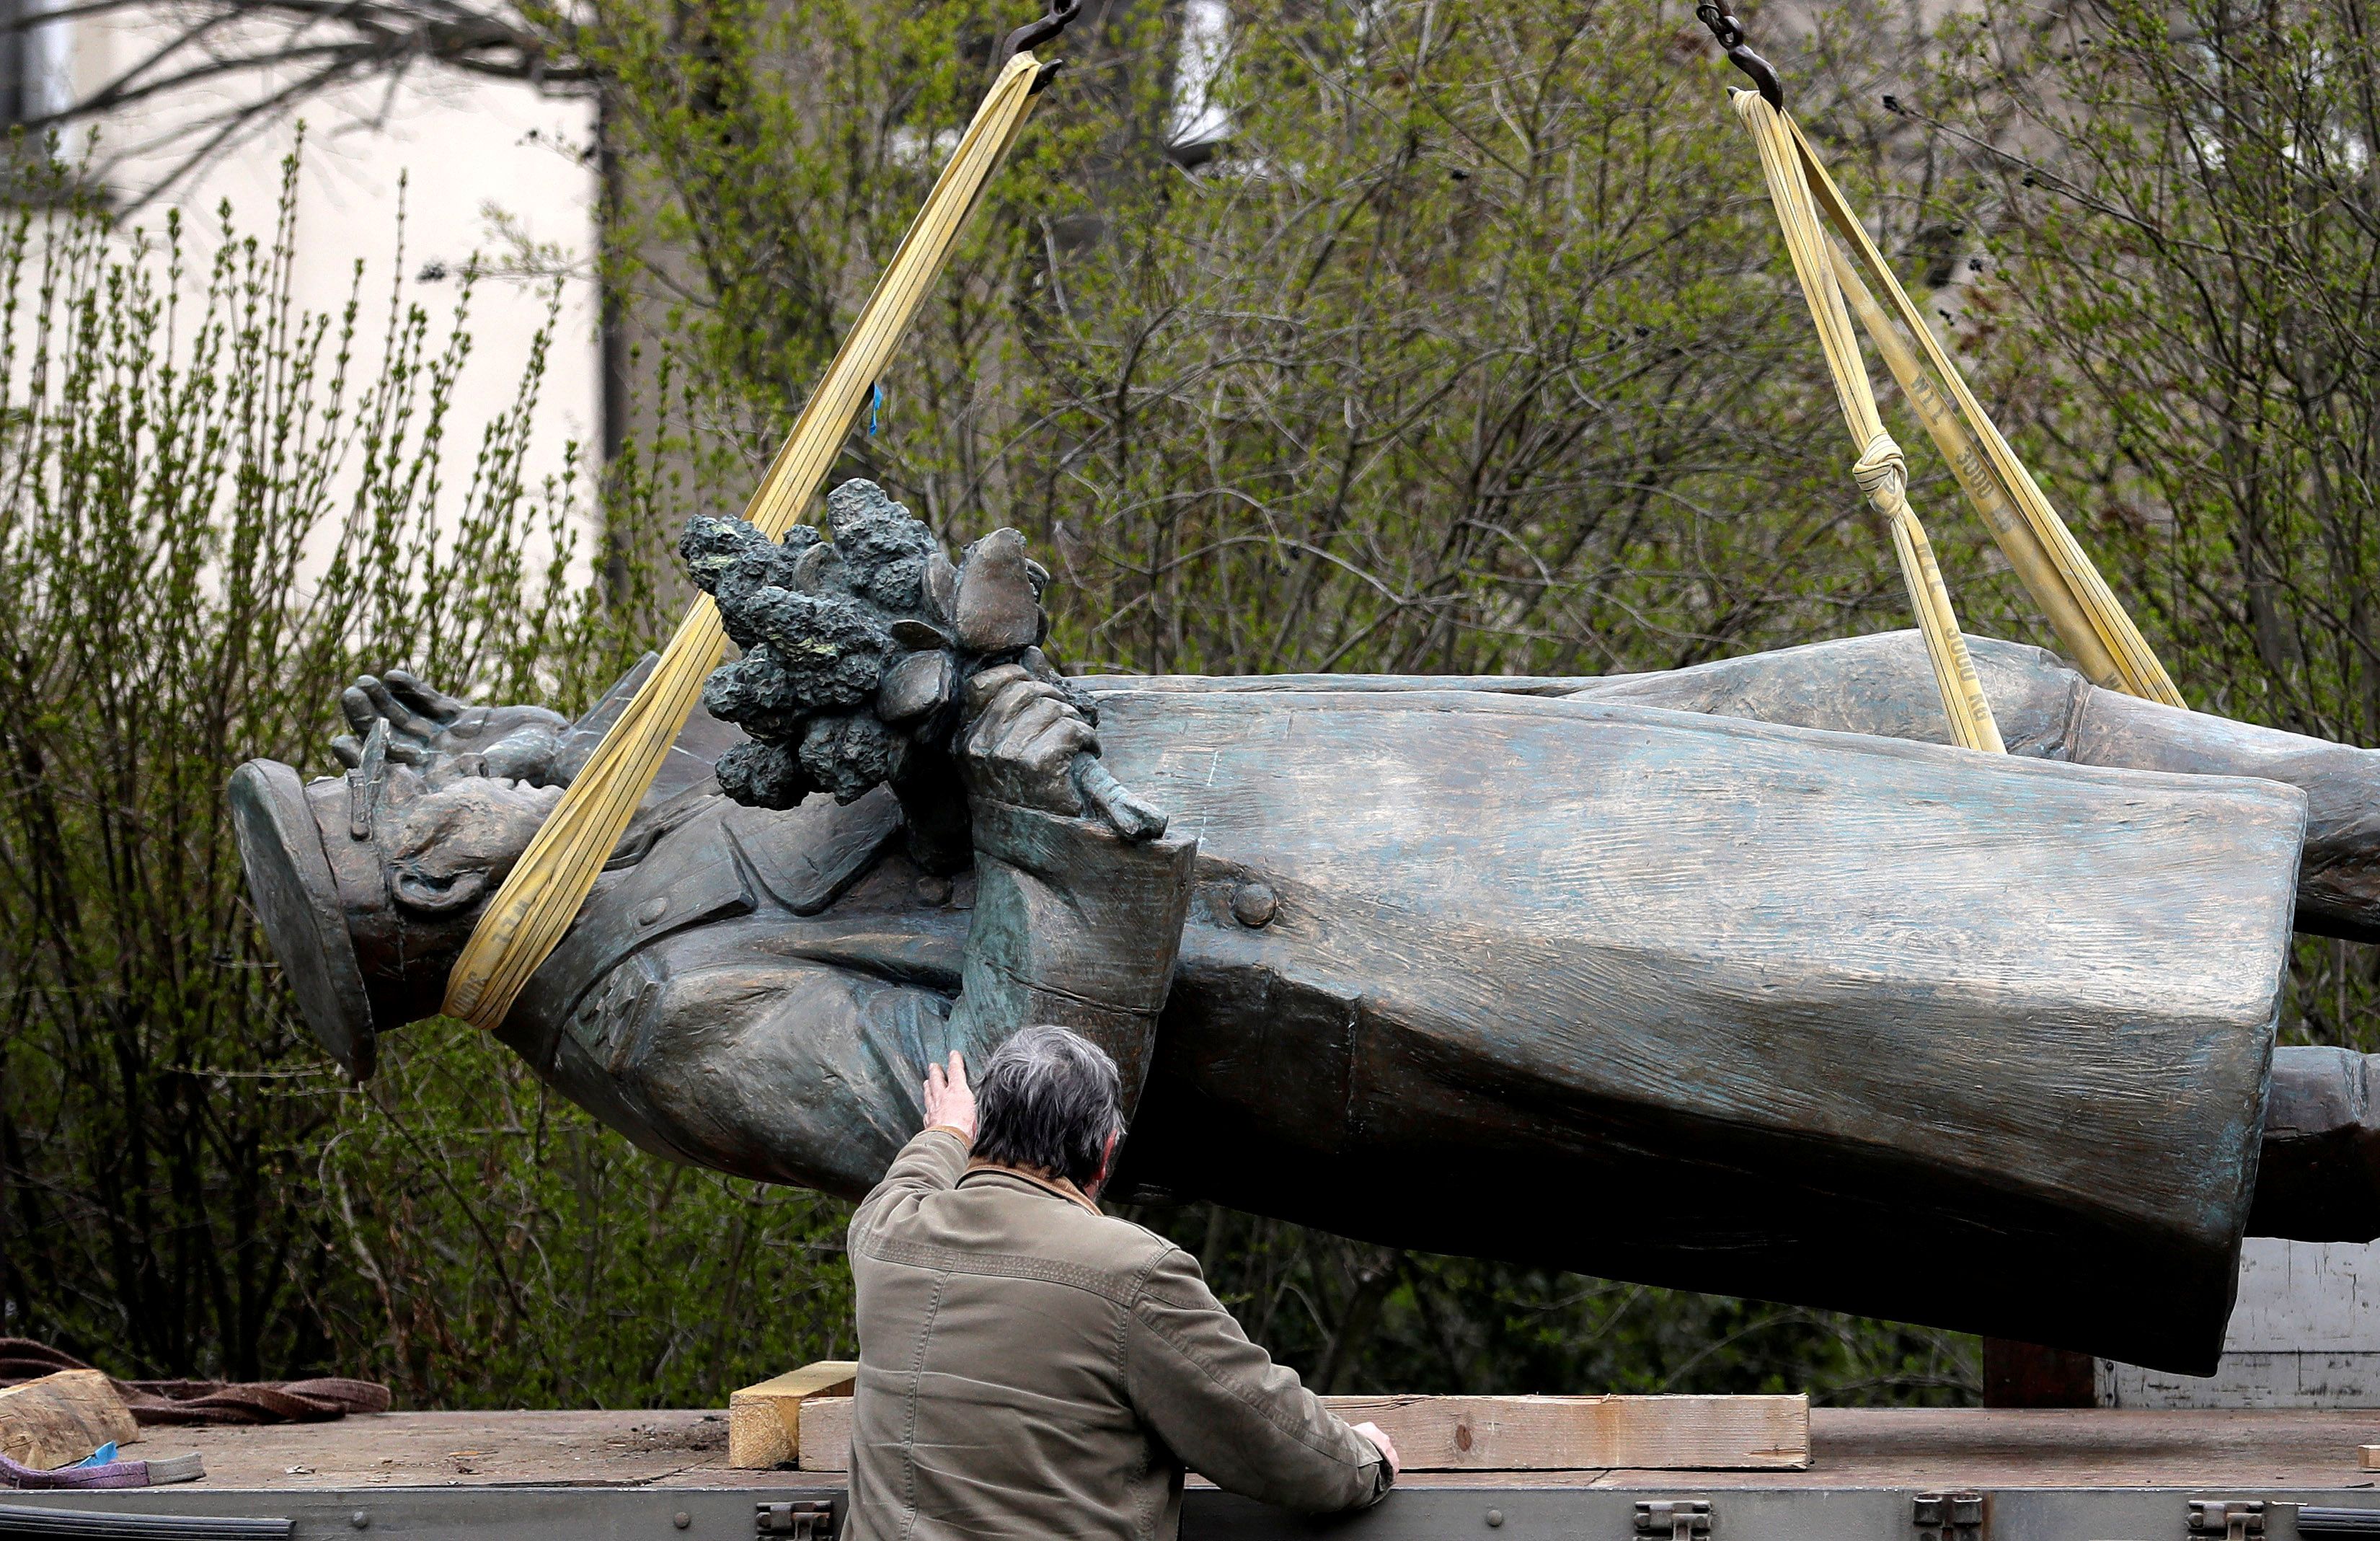 La estatua del comandante soviético de la Segunda Guerra Mundial Ivan Stepanovic Konev es cargada en un camión después de ser retirada de su plataforma en Praga, República Checa, el 3 de abril de 2020 (REUTERS/David W Cerny -/Foto de archivo)